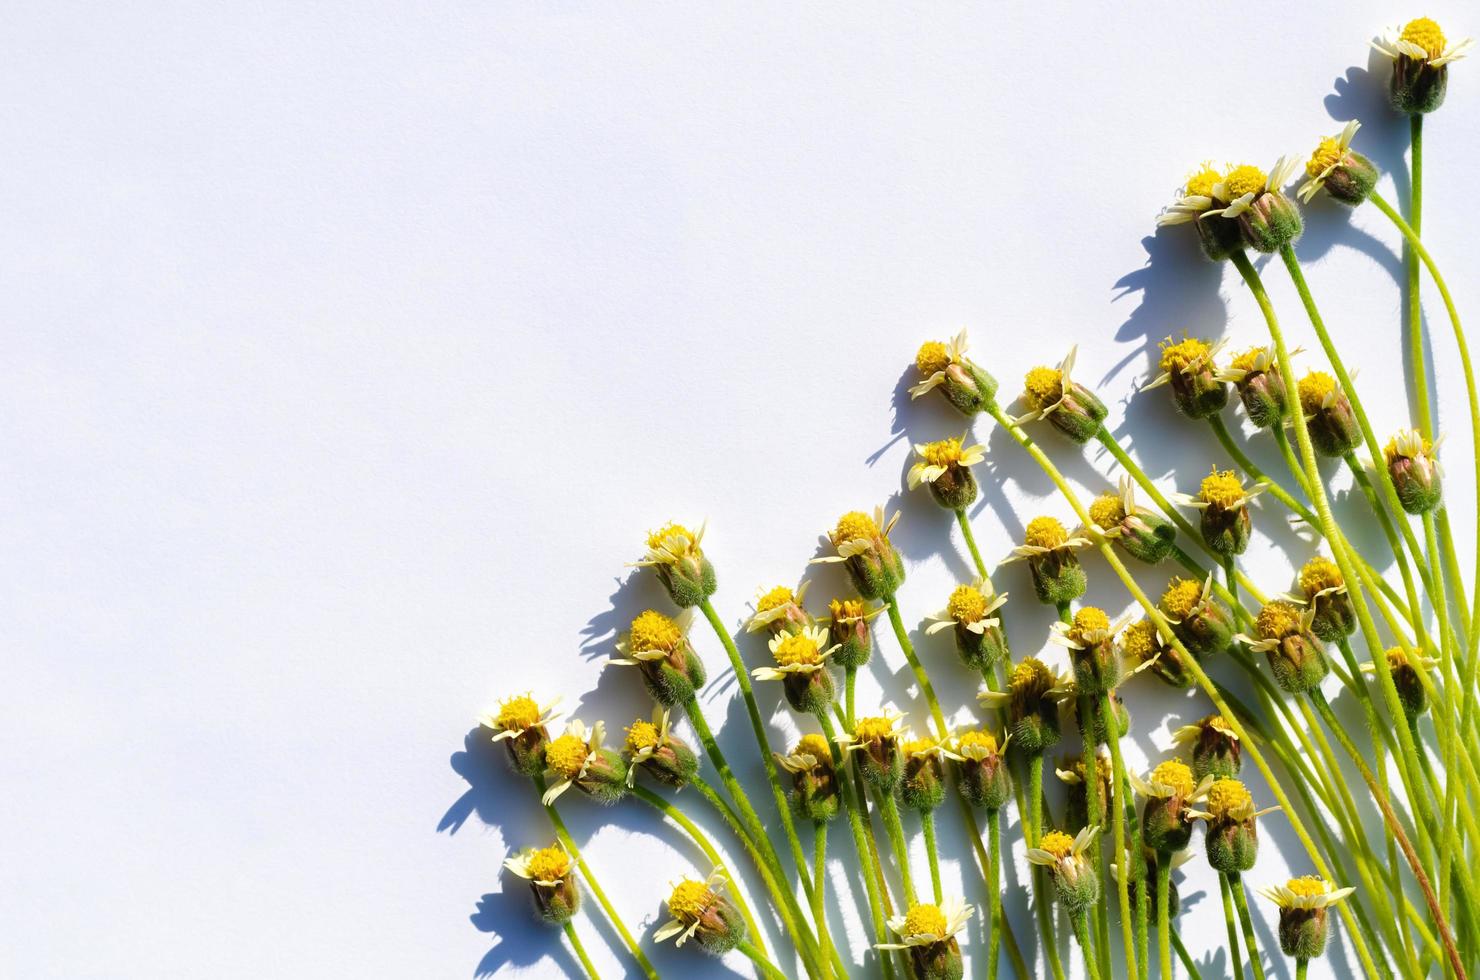 botones de abrigo o flores de margarita tridax con sombra de la luz del sol sobre fondo de papel blanco. foto